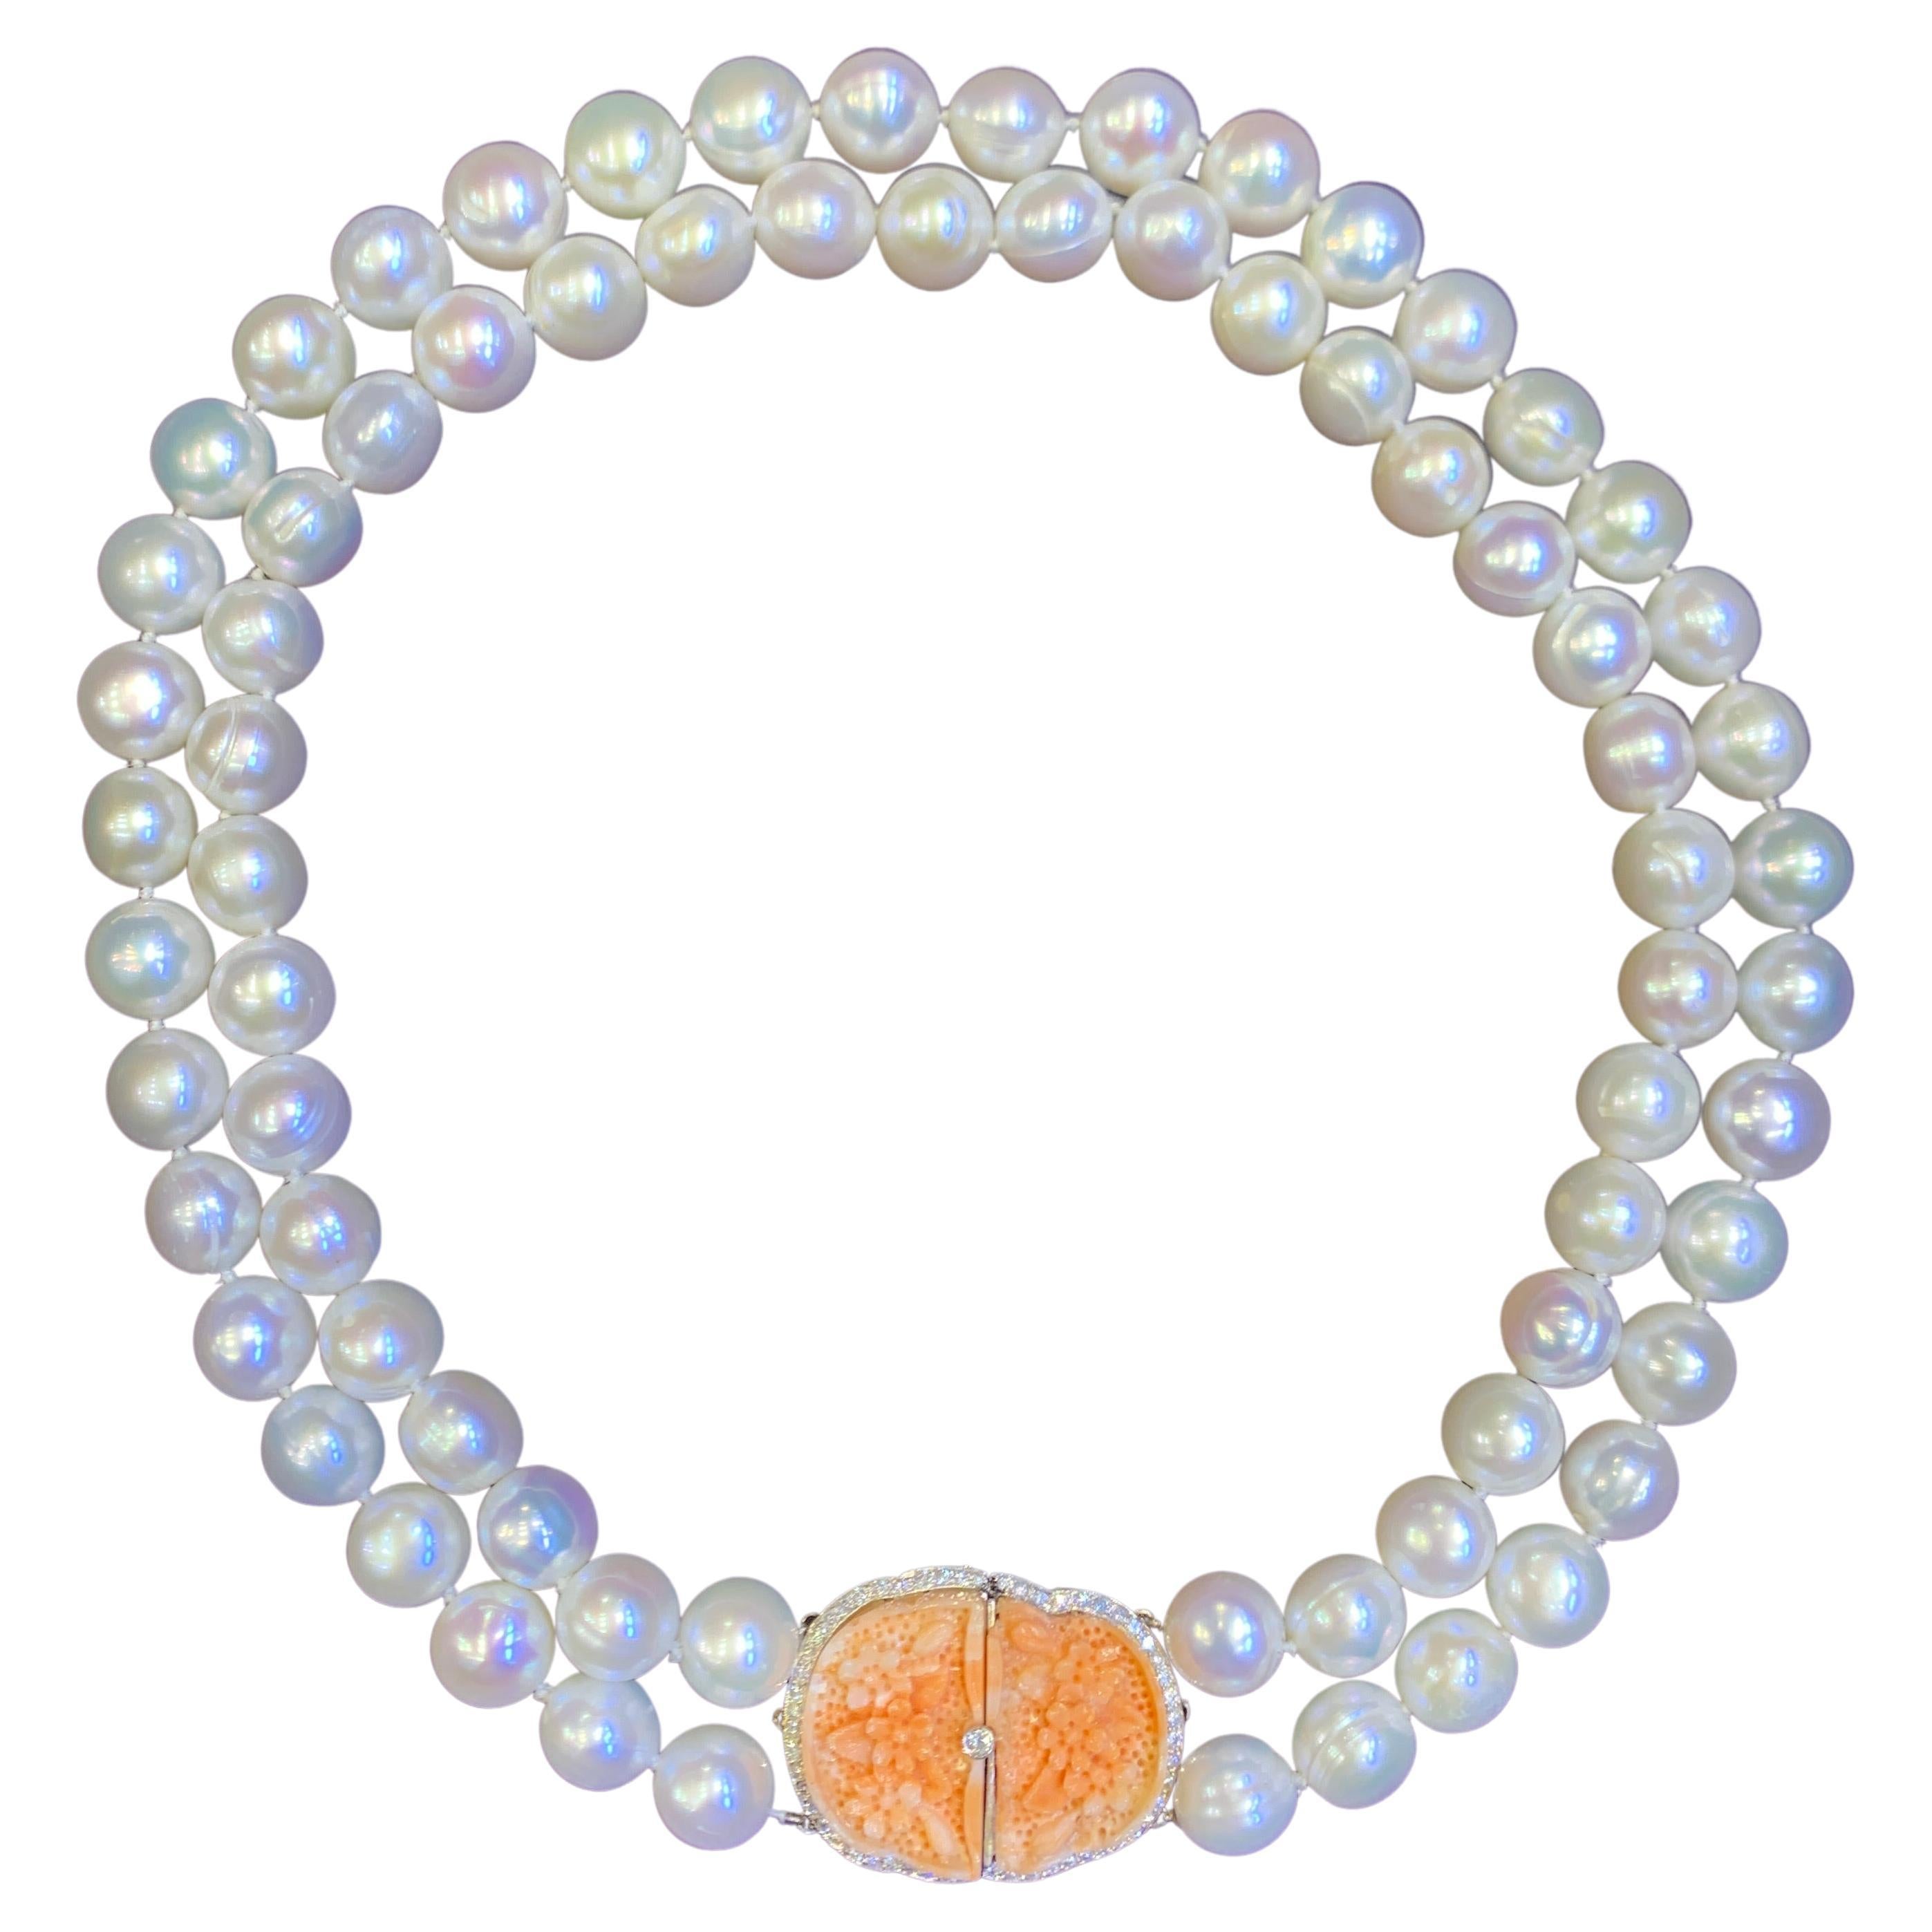 Collier à deux brins en perles et corail sculpté

Ce collier se compose de deux rangs de perles de culture attachés par un fermoir en or blanc 18 carats serti de 56 diamants ronds et de deux coraux à motif floral magnifiquement sculptés.

Estampillé